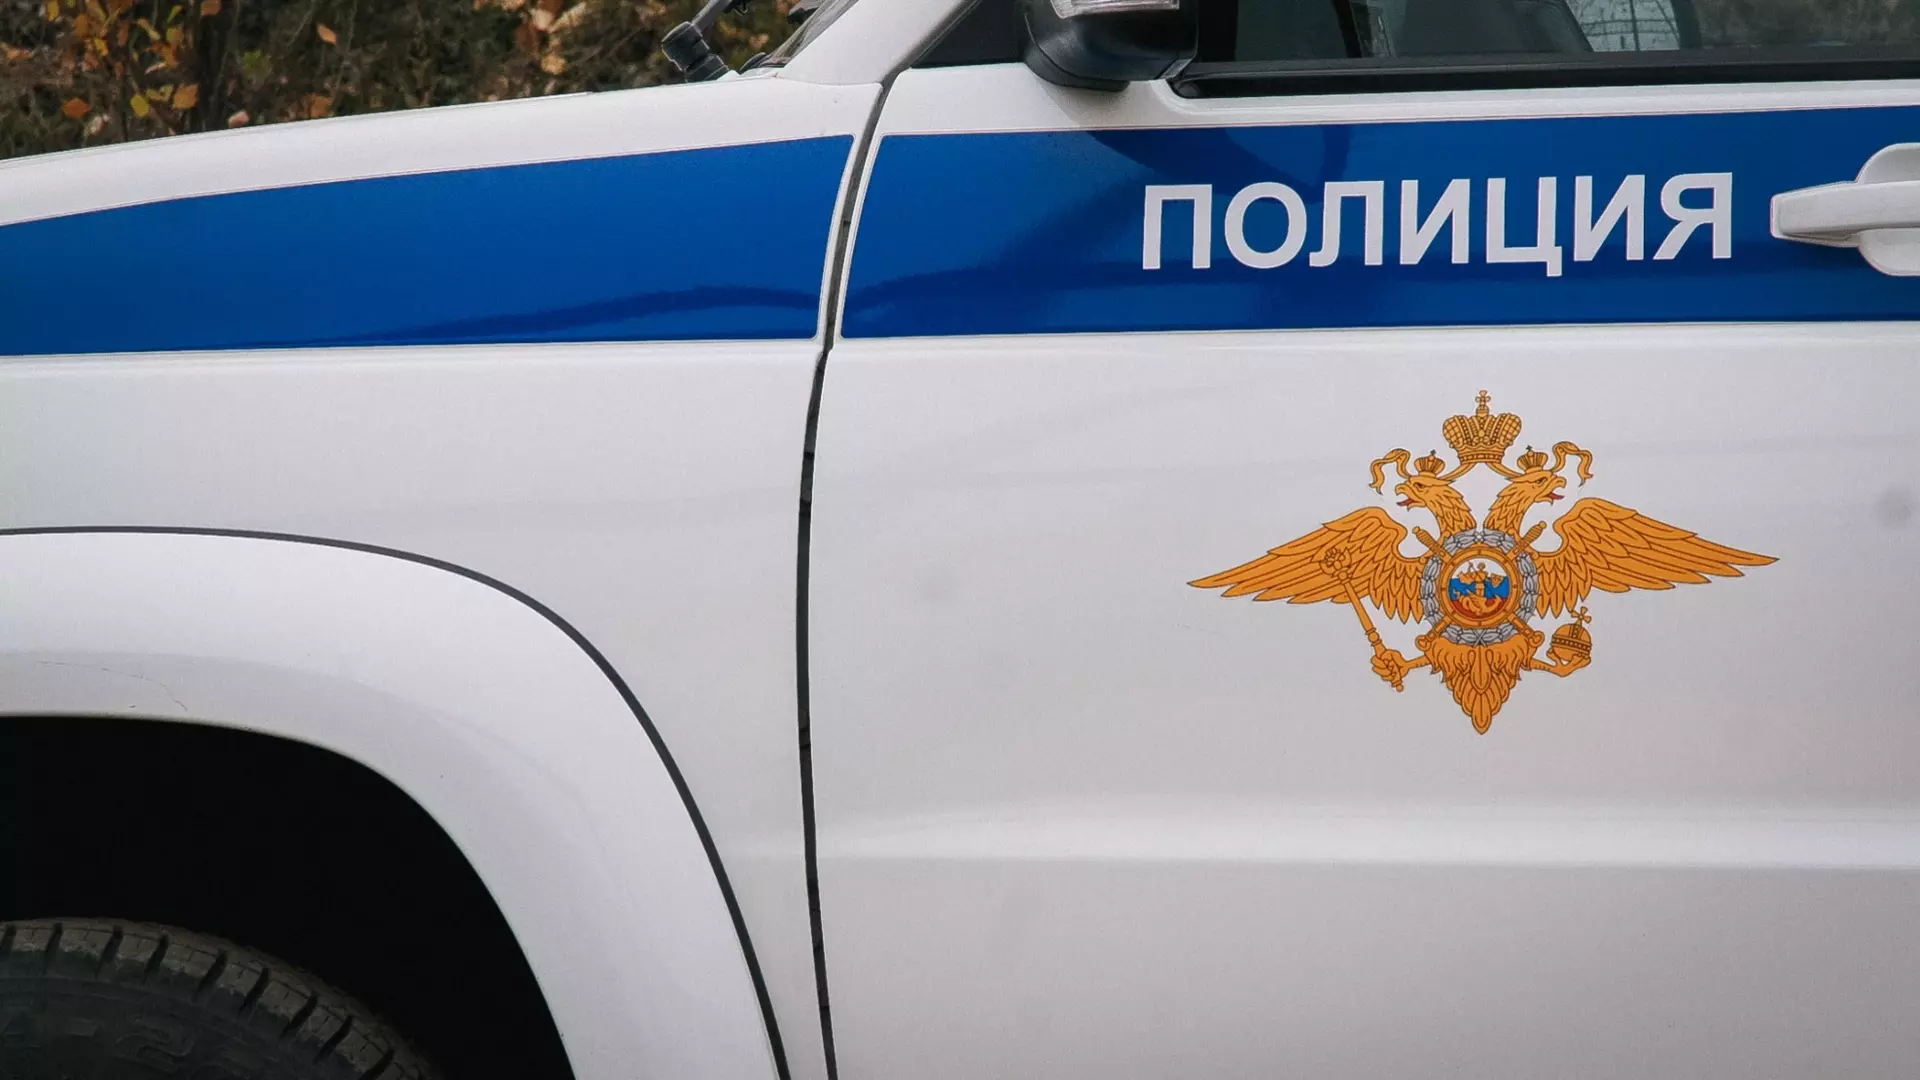 33-летний житель Первоуральска задержан за отношения с 14-летней школьницей